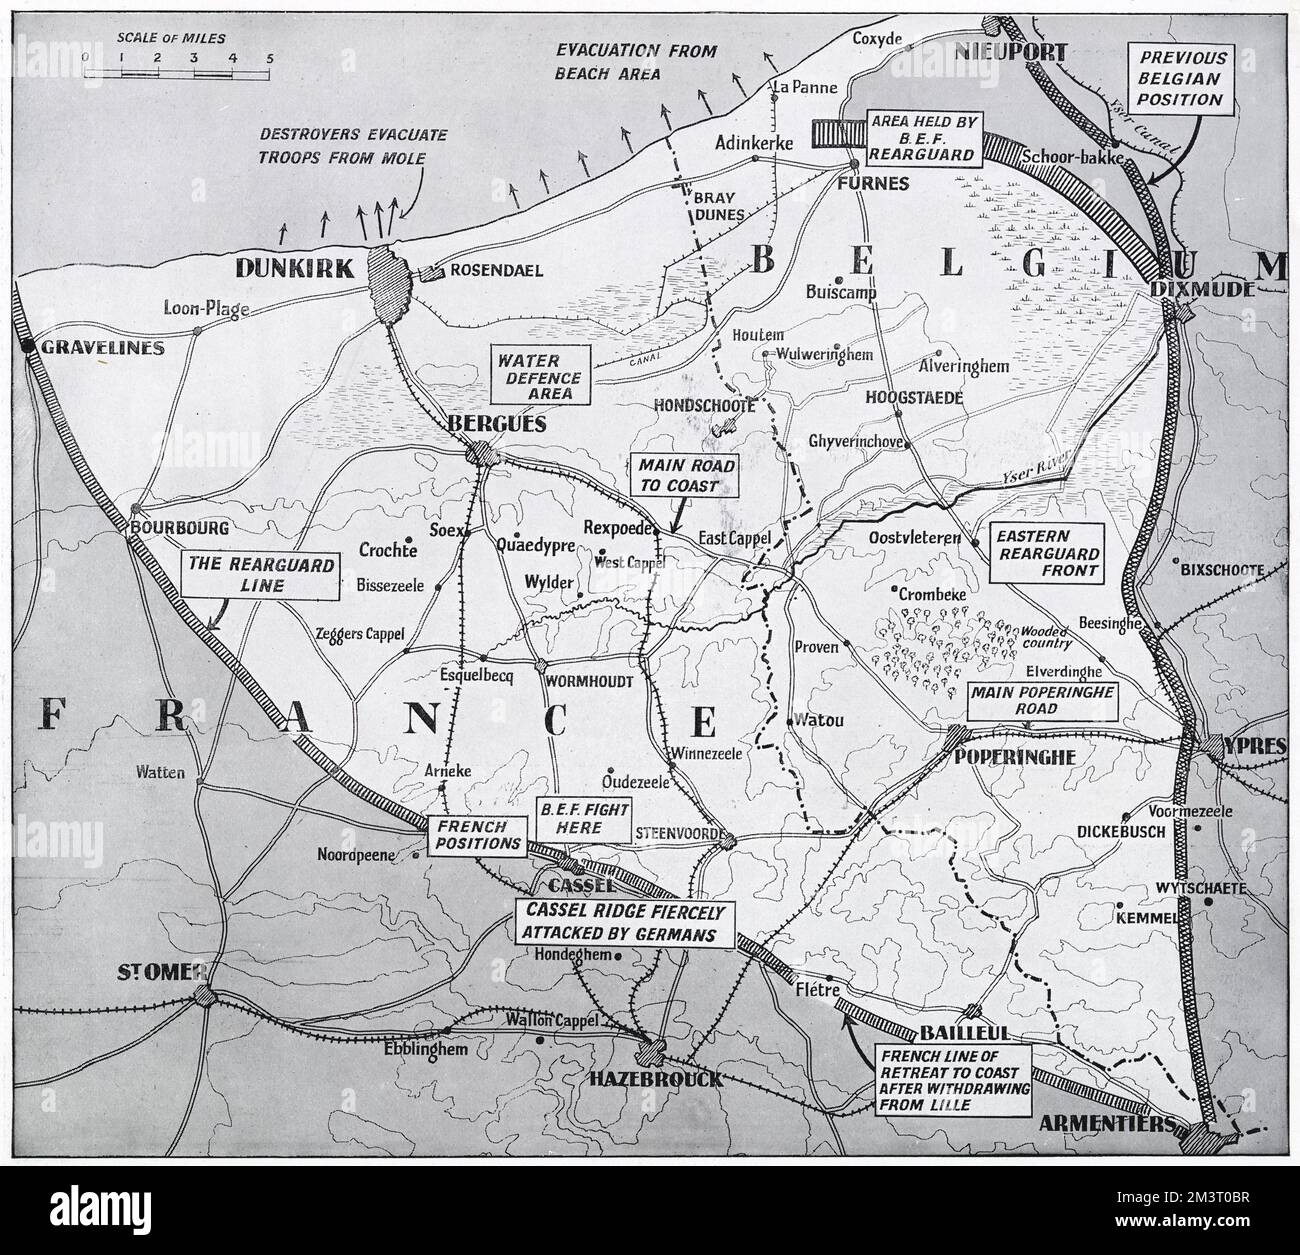 Karte der nördlichen französischen und belgischen Küste, die die Evakuierung von Dünkirchen und anderen Orten, das Evakuierungsdreieck, durch das sich die alliierten Armee zurückgezogen hat, und das Gebiet des Rückzugskampfes zeigt. Datum: 1940 Stockfoto